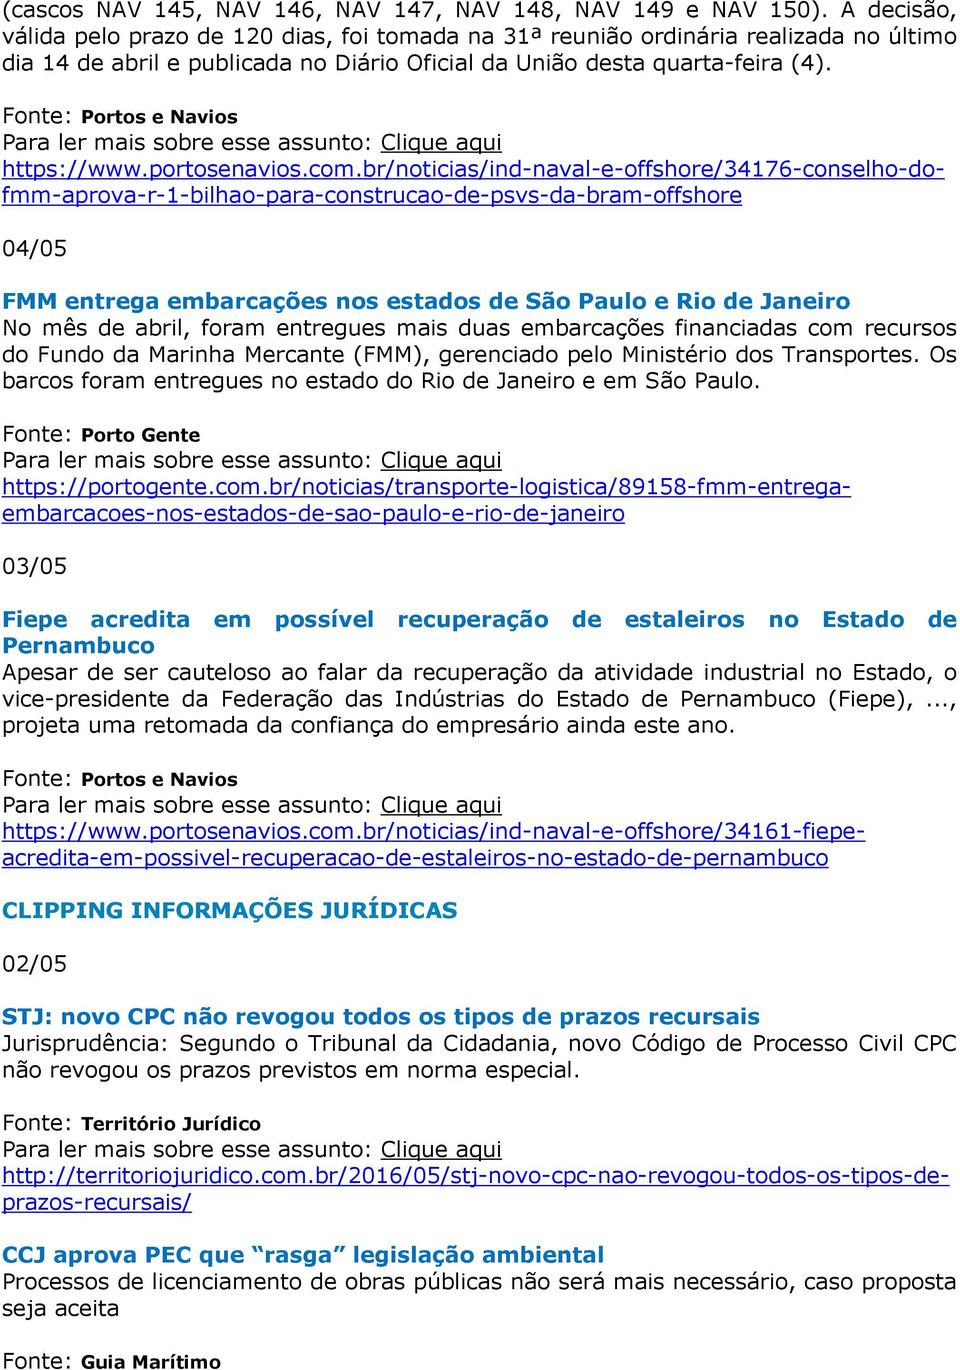 portosenavios.com.